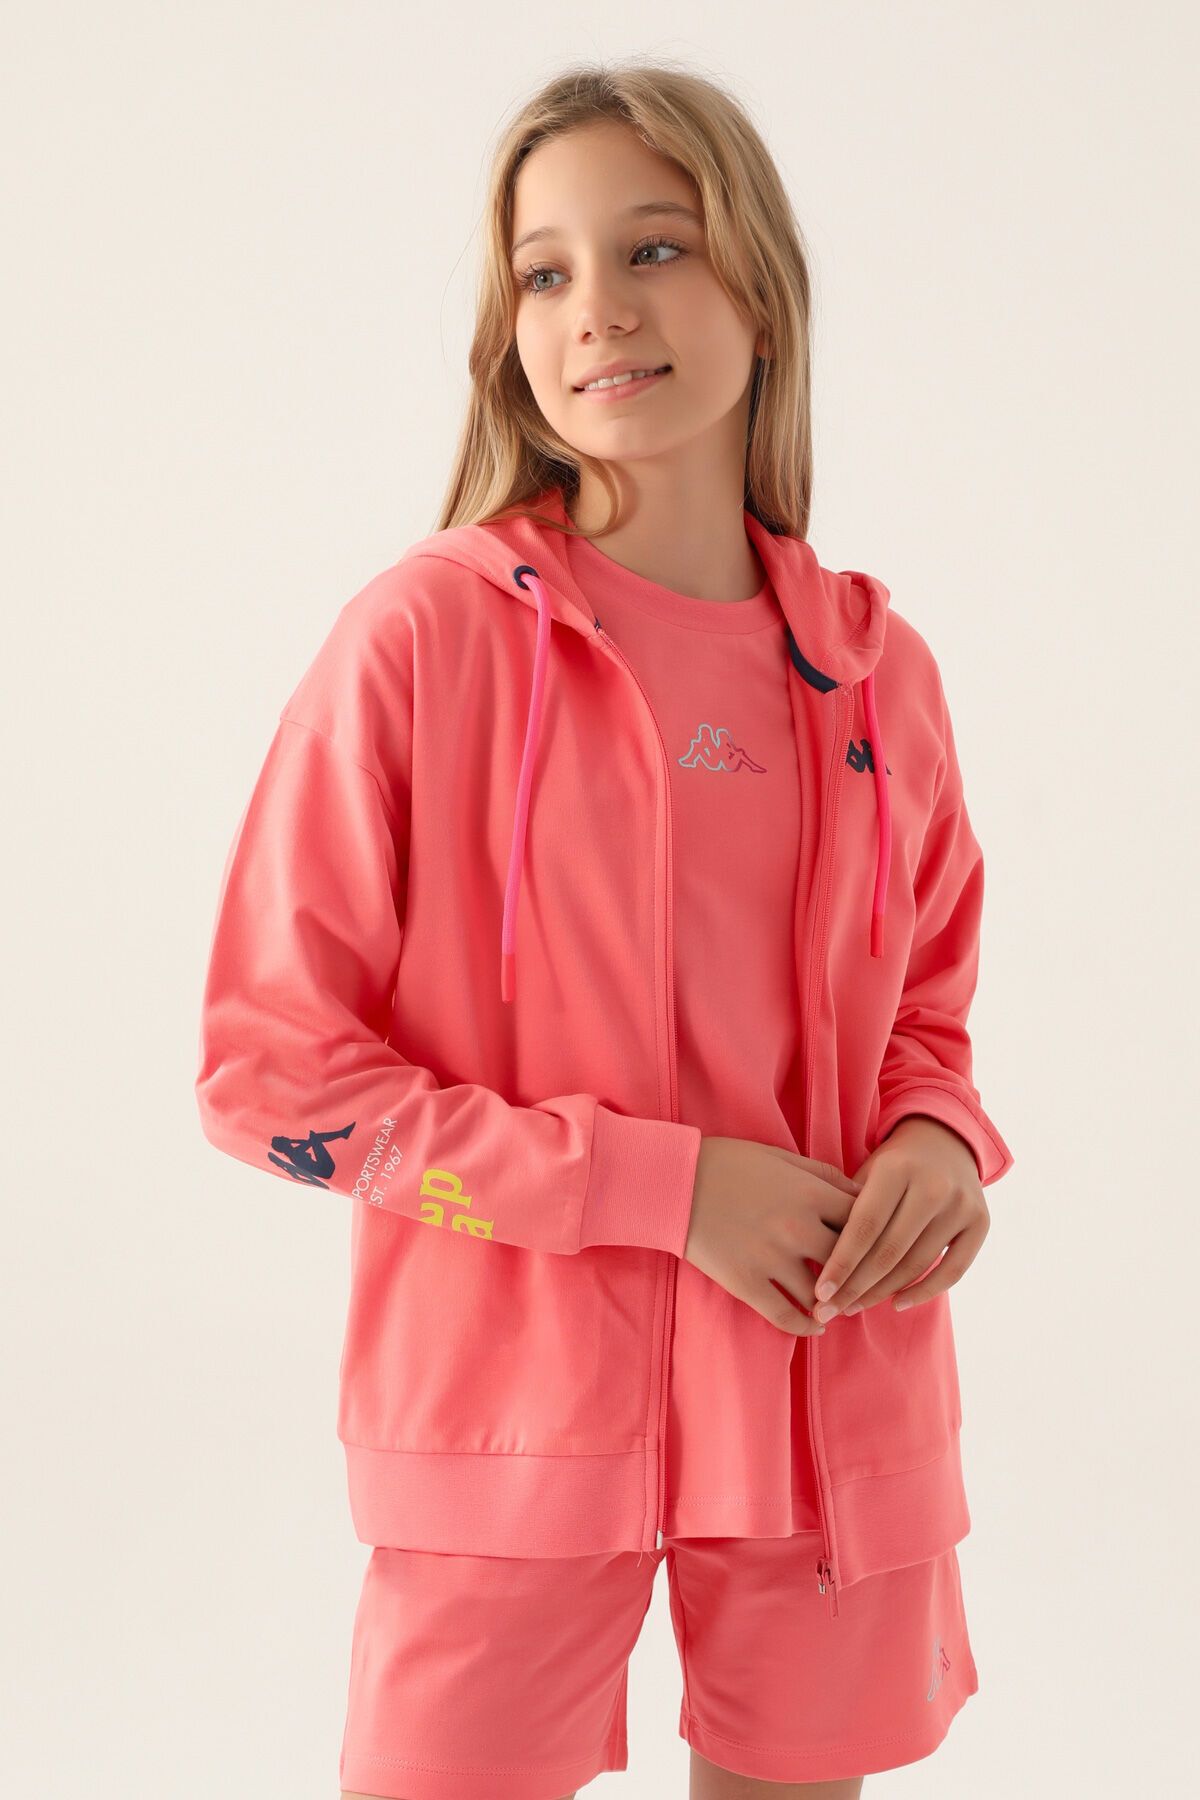 Kappa Wear Neon Pembe Kız Çocuk Sweatshirt